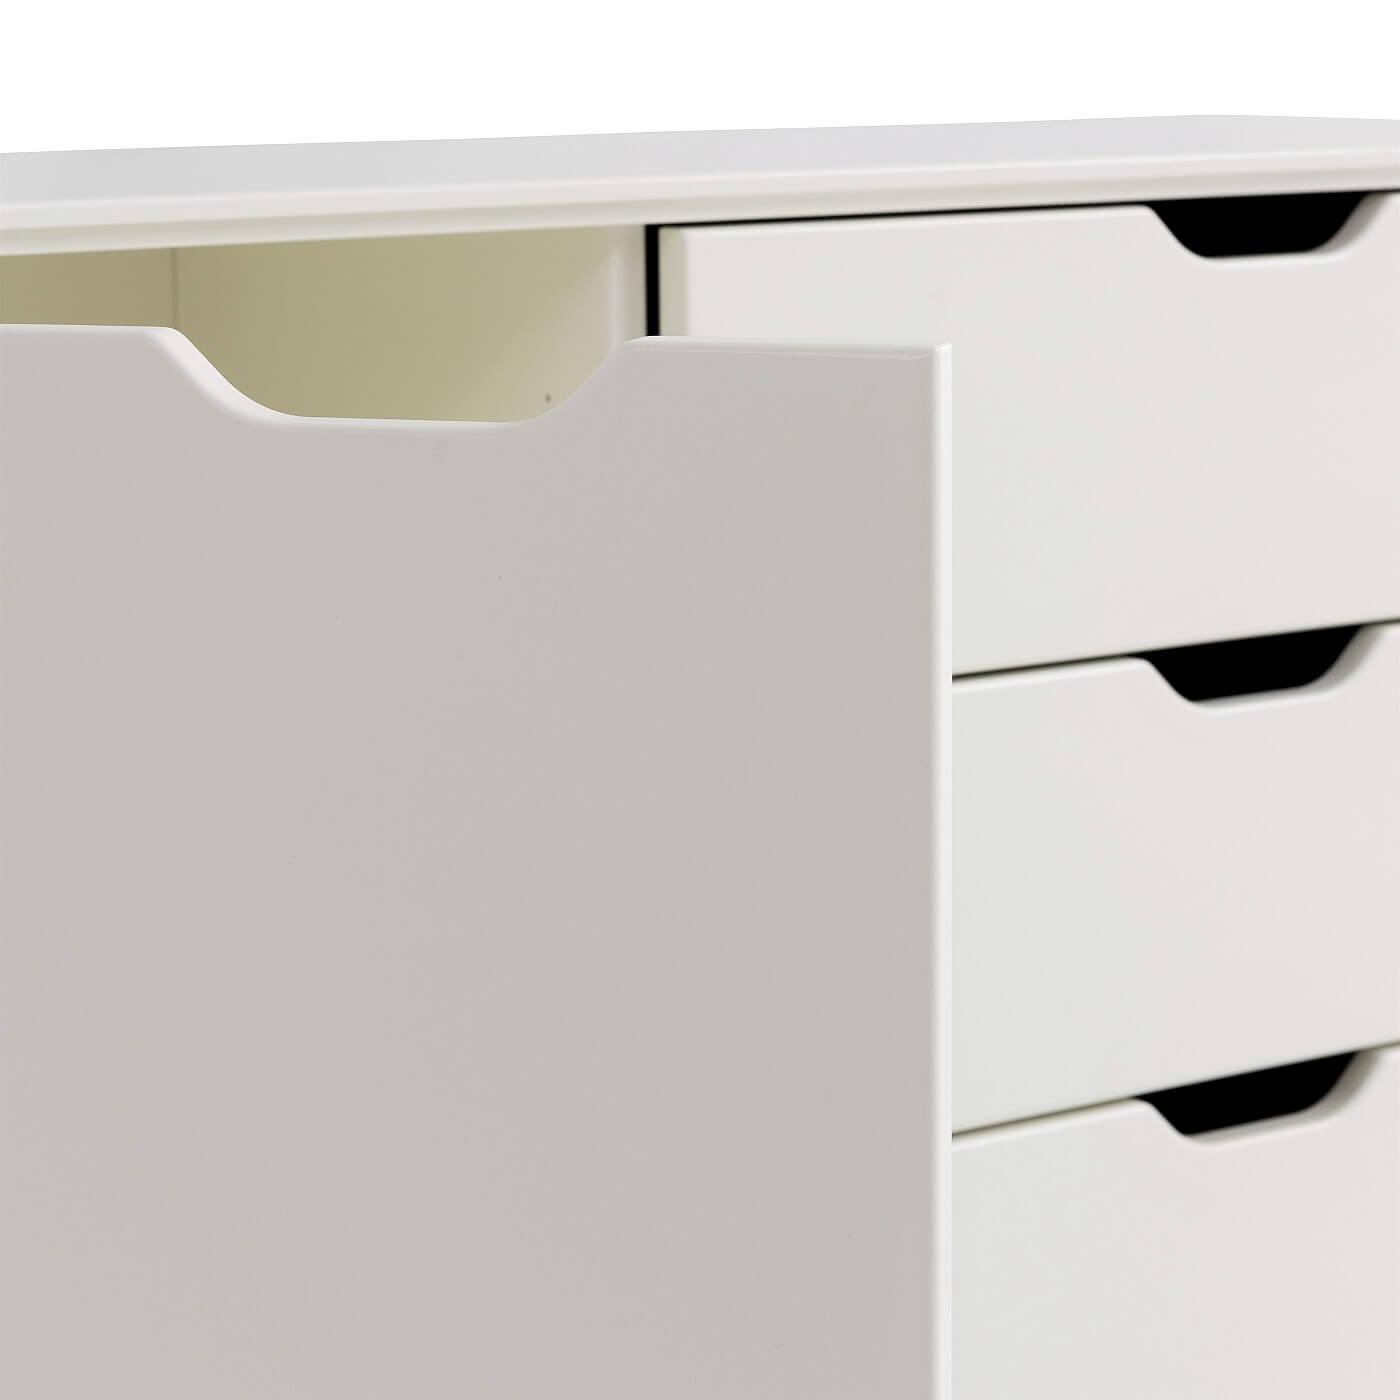 Komoda drewniana biała KOLO. Widok z boku na nowoczesne szuflady bez wystających uchwytów i uchylone drzwiczki komody skandynawskiej